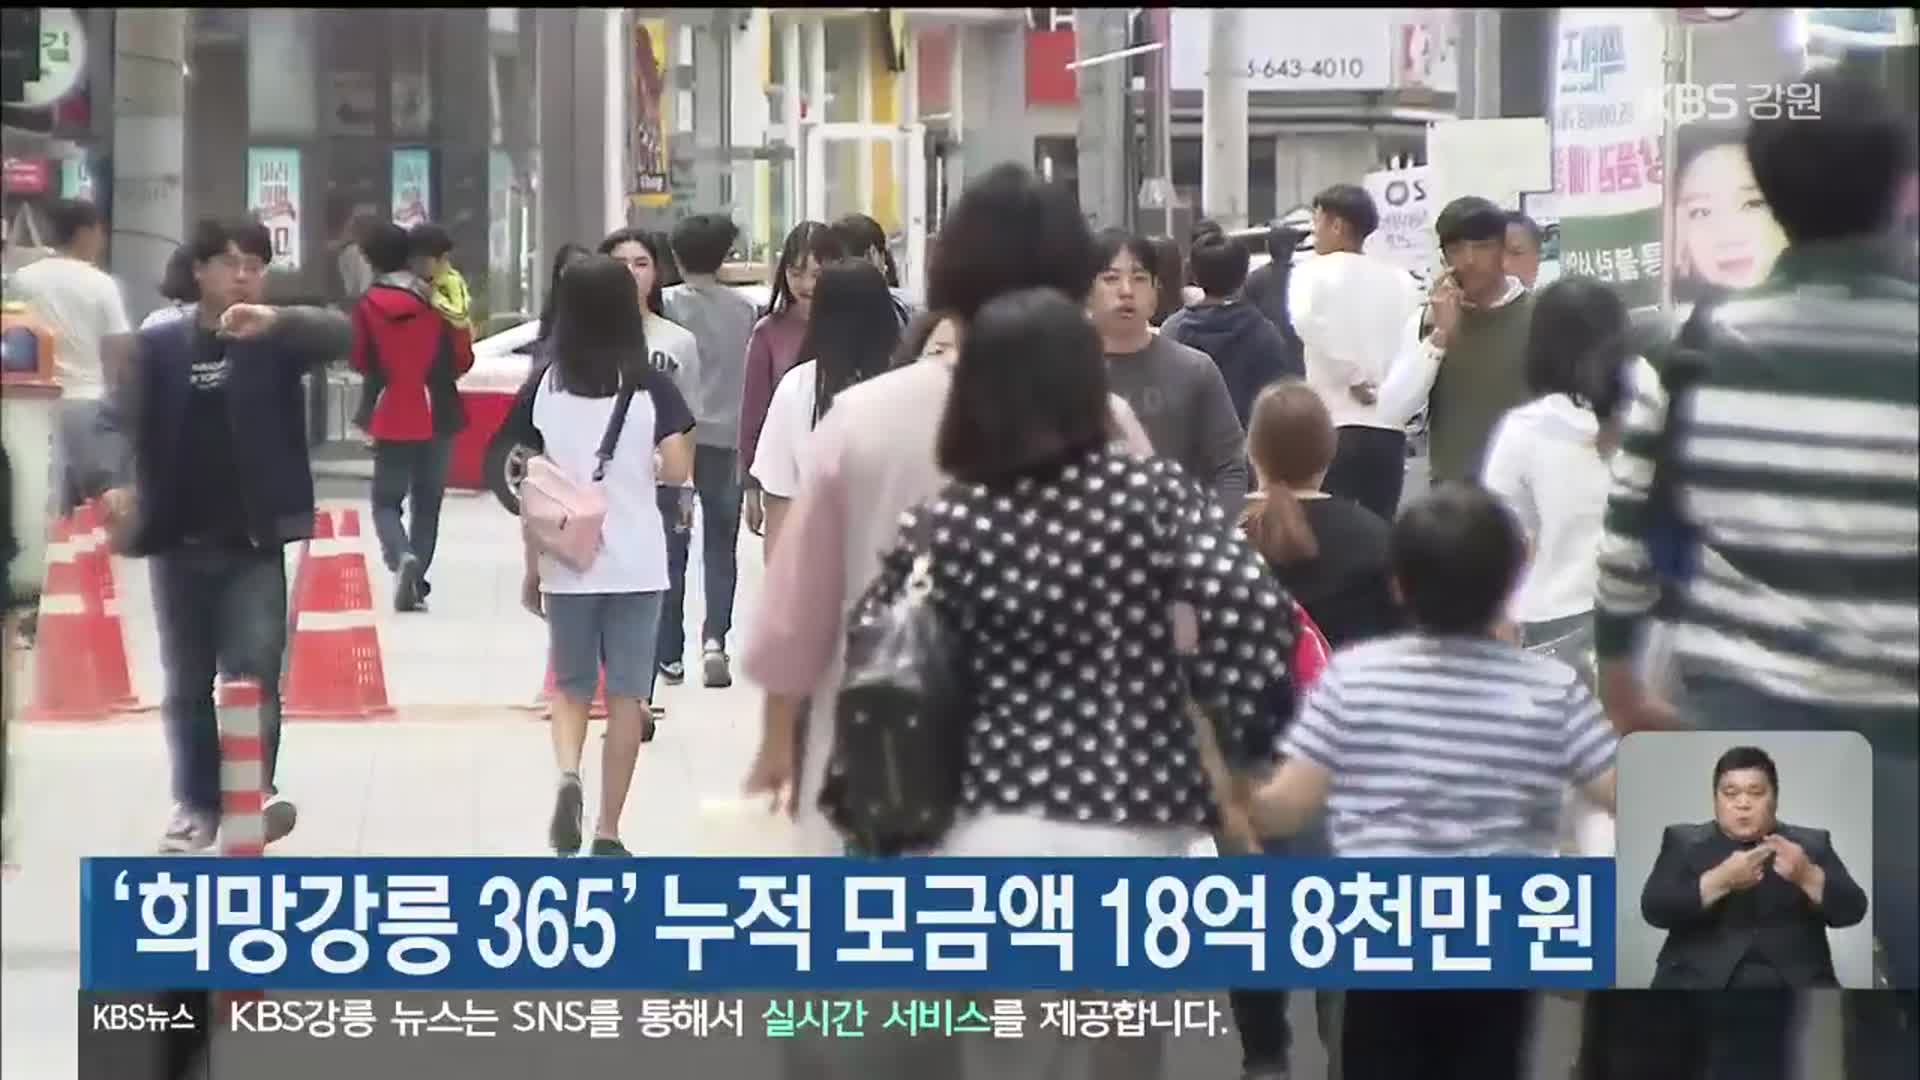 ‘희망강릉 365’ 누적 모금액 18억 8천만 원